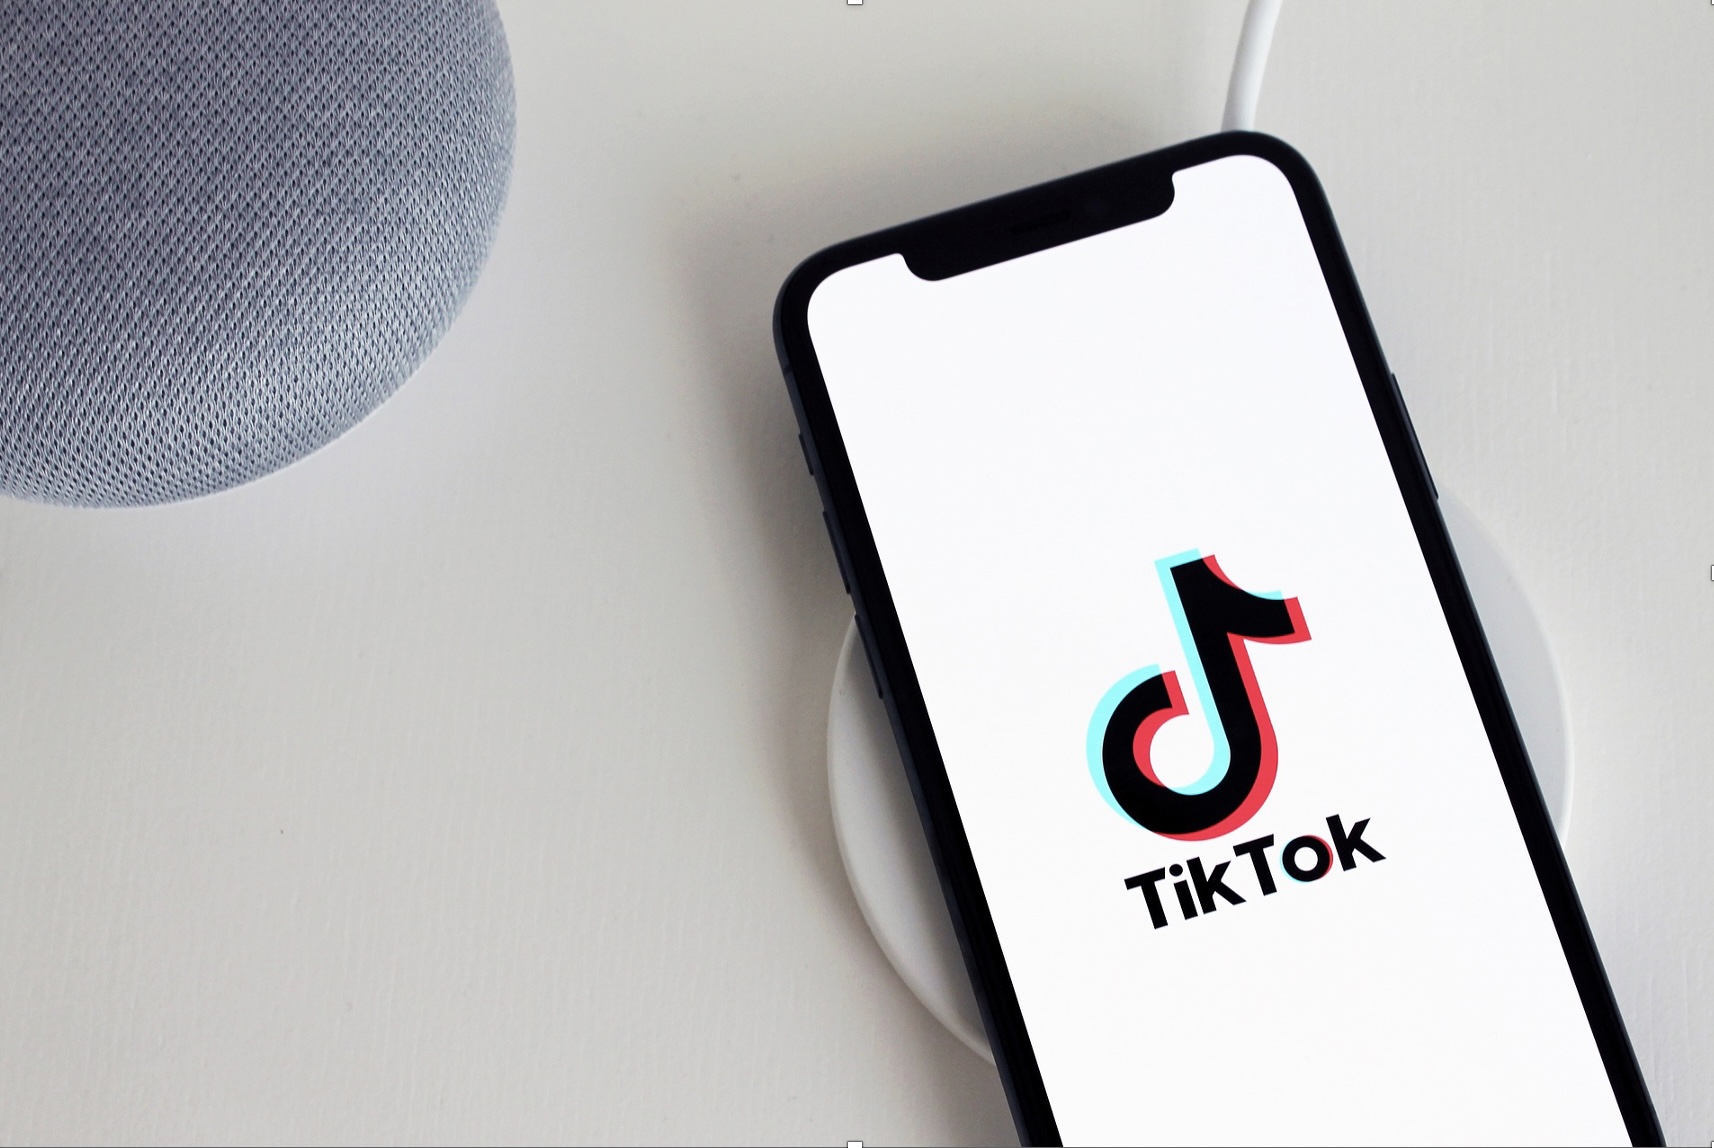 Baixar vídeos do TikTok de forma fácil, rápida e grátis 9